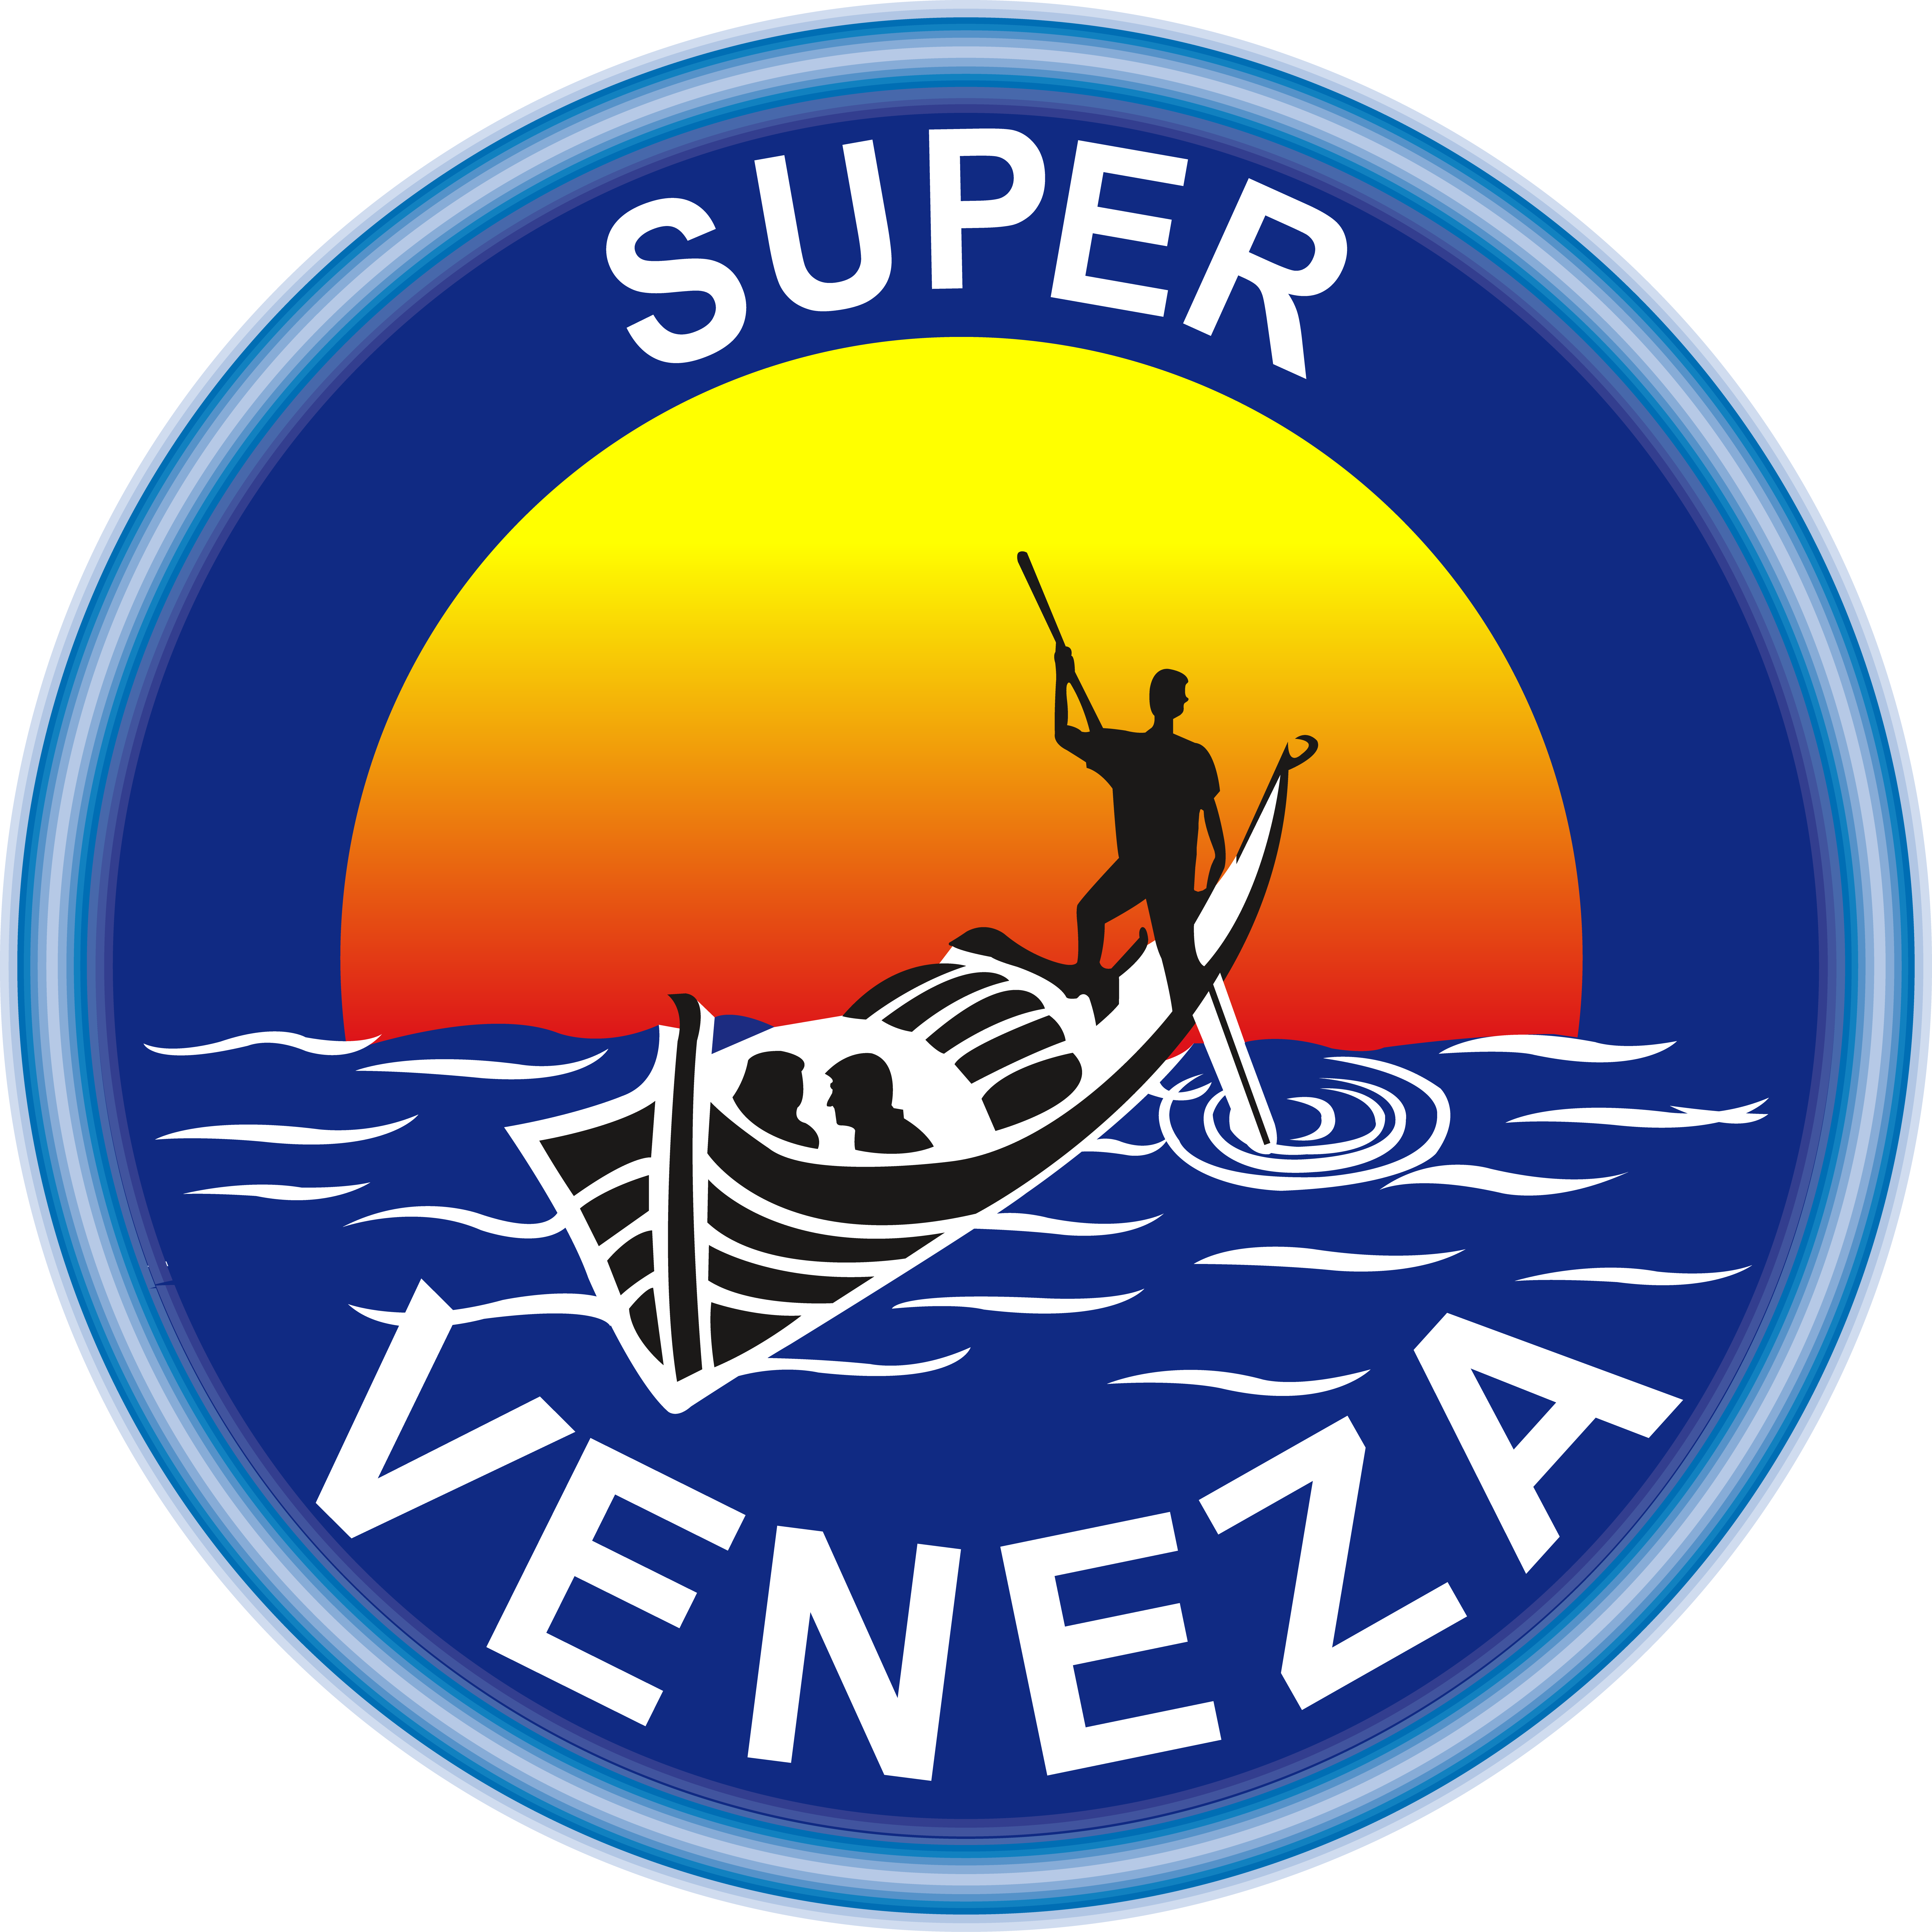 Veneza-logo-8192px--x--8192-2px